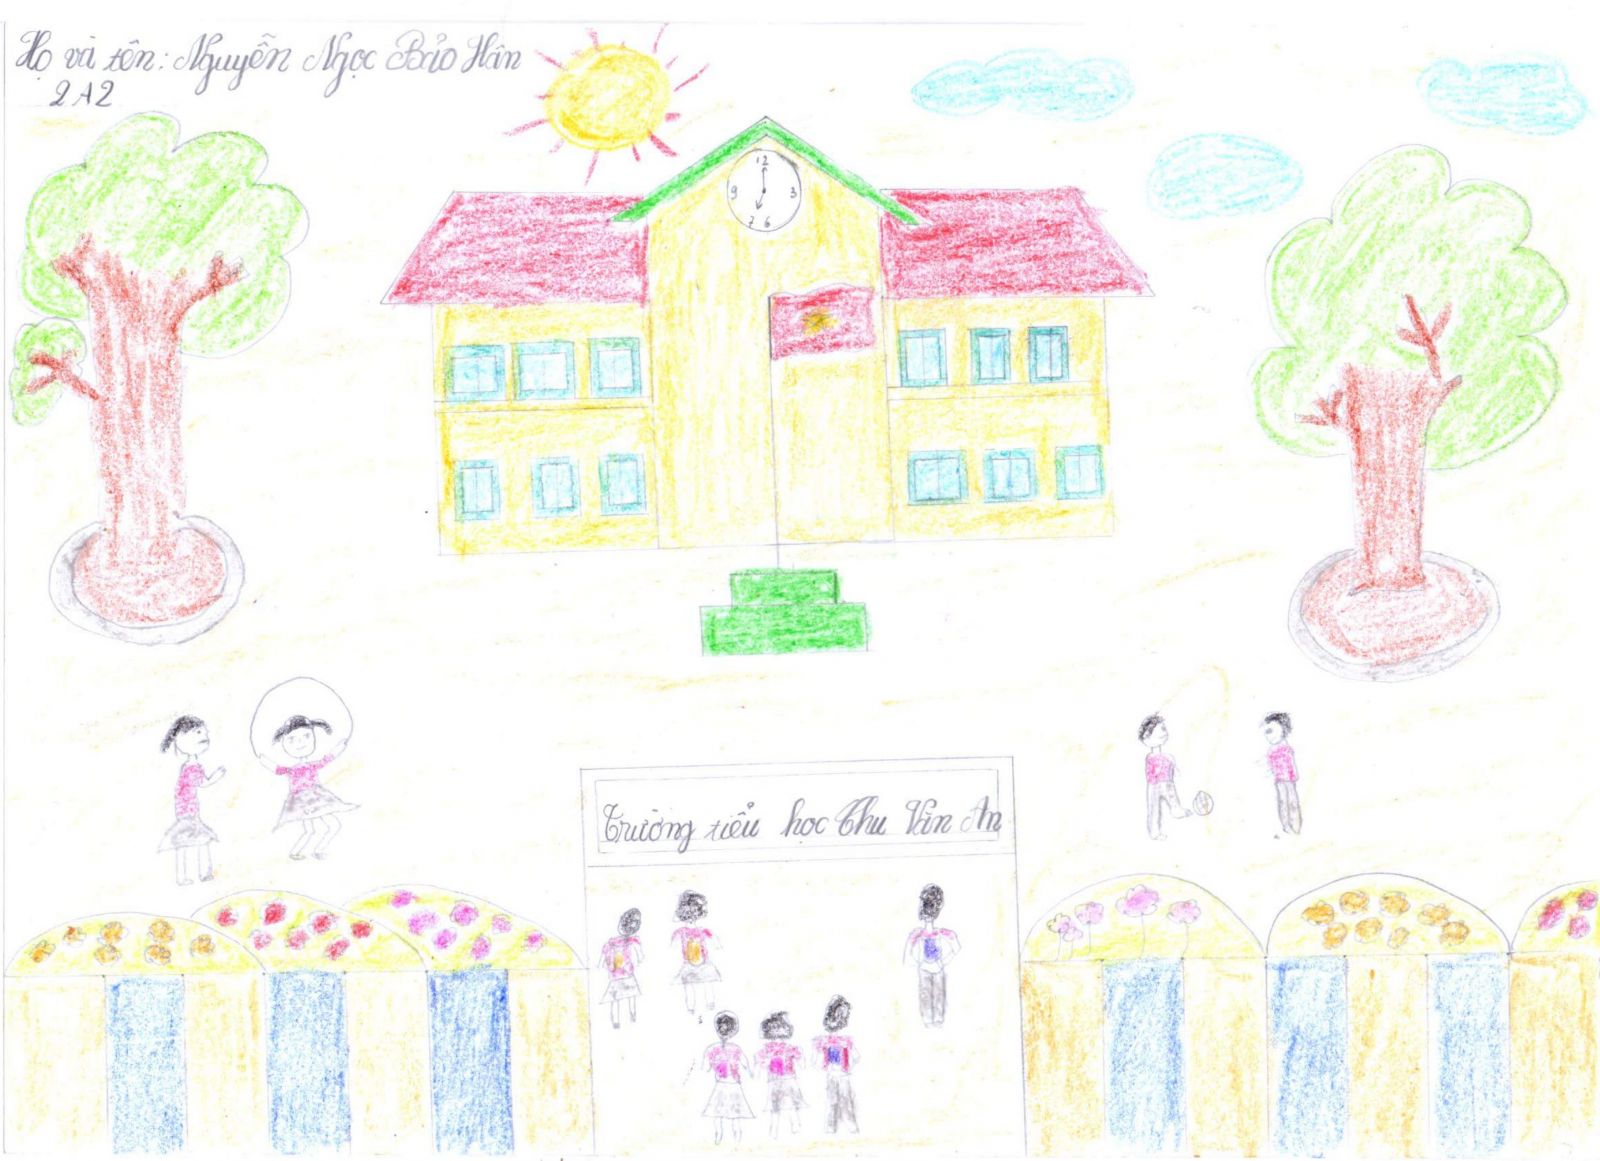 Trường Tiểu học Vạn Phúc tổ chức cuộc thi Viết vẽ tranh về gia đìnhngôi  trường hạnh phúc tạo 